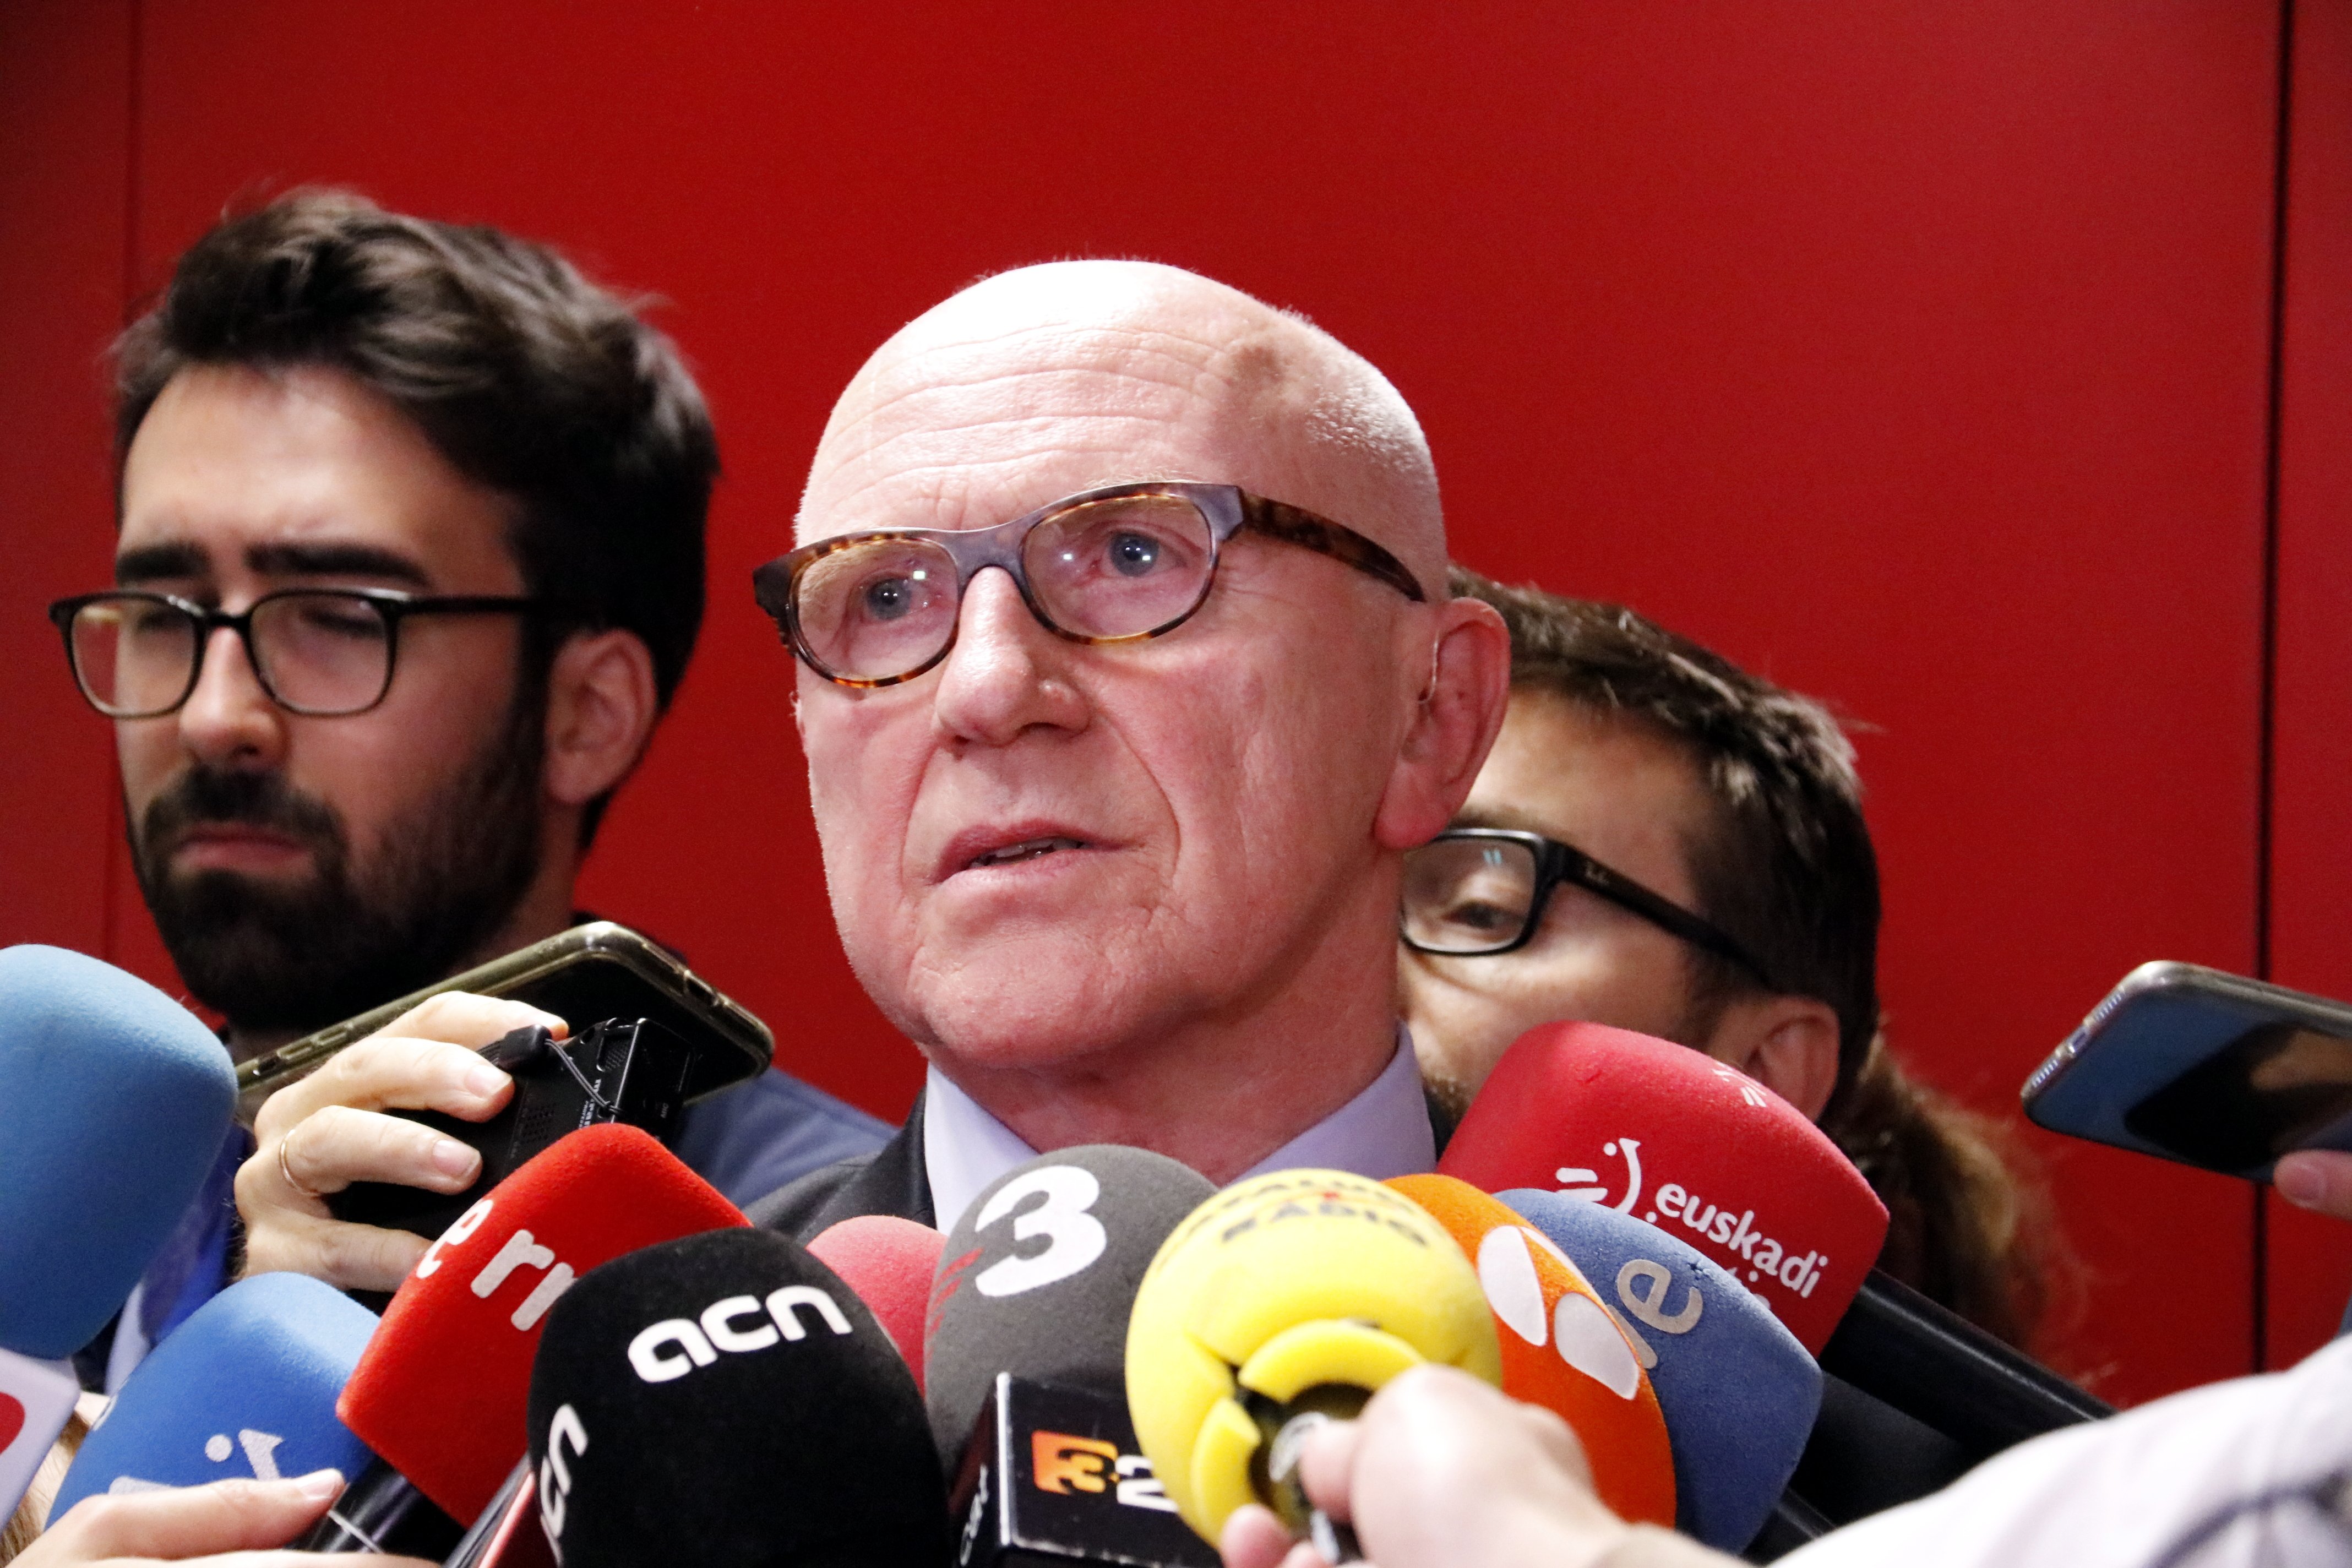 El abogado flamenco de Puigdemont todavía no ha recibido ninguna notificación de la fiscalía belga